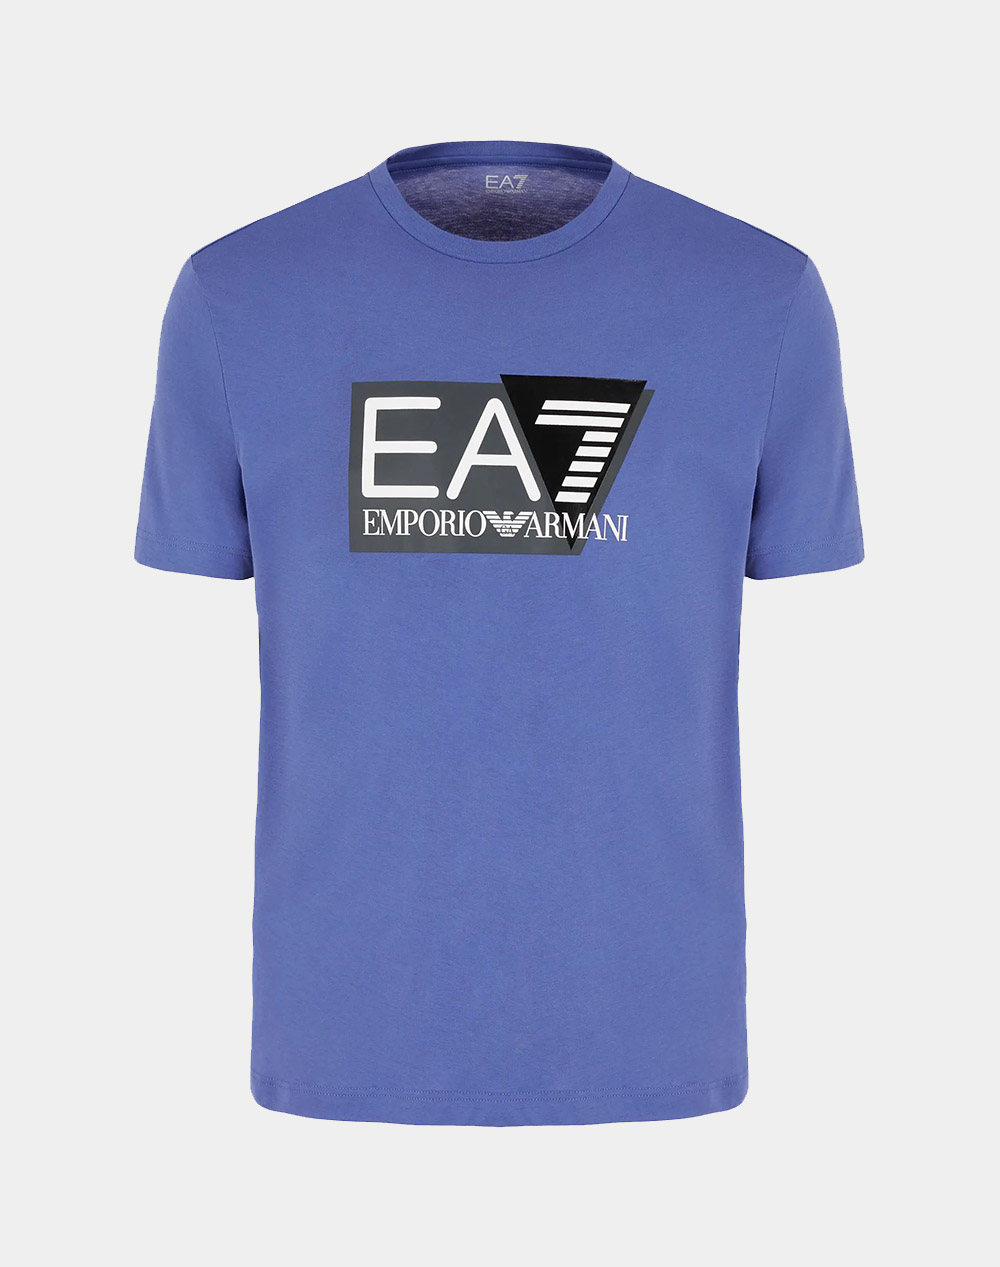 EA7 T-SHIRT